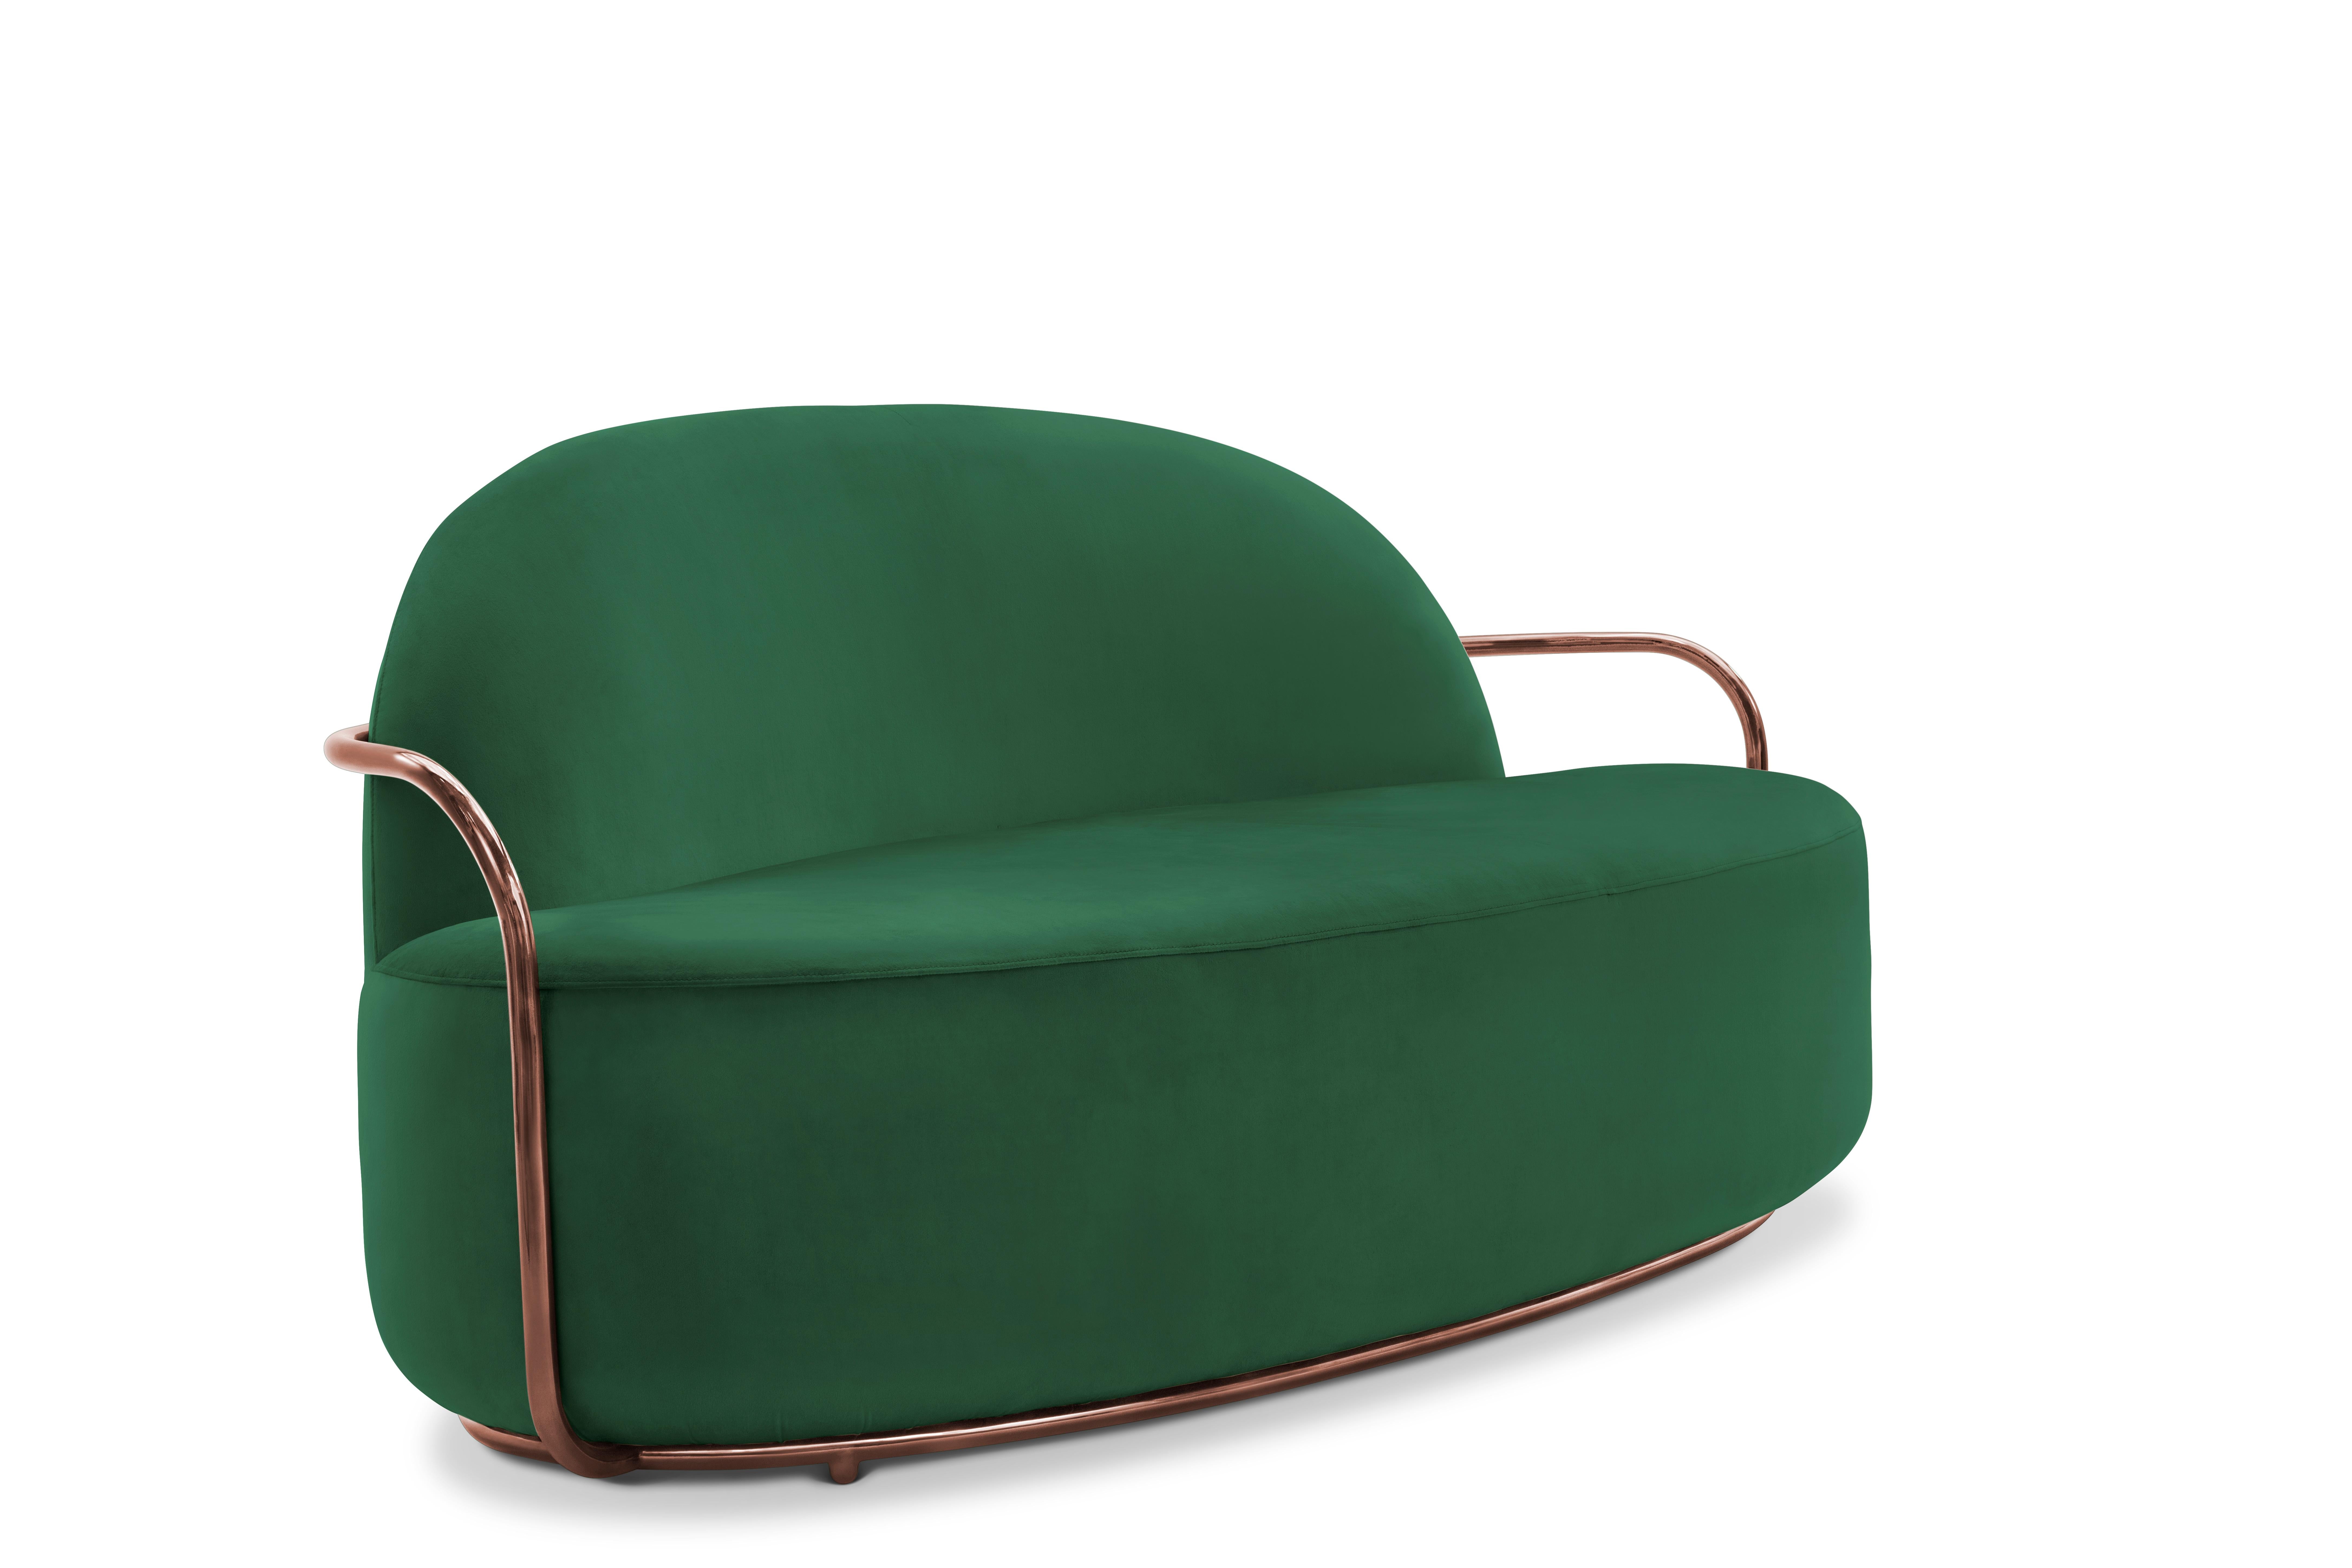 Der satte tiefgrüne Samt im Kontrast zu den roségoldenen Metallarmen betont die fließenden Linien des Orion 3 Seat Sofa with Plush Green Velvet and Rose Gold Arms von Nika Zupanc.

Nika Zupanc, eine auffallend renommierte slowenische Designerin,